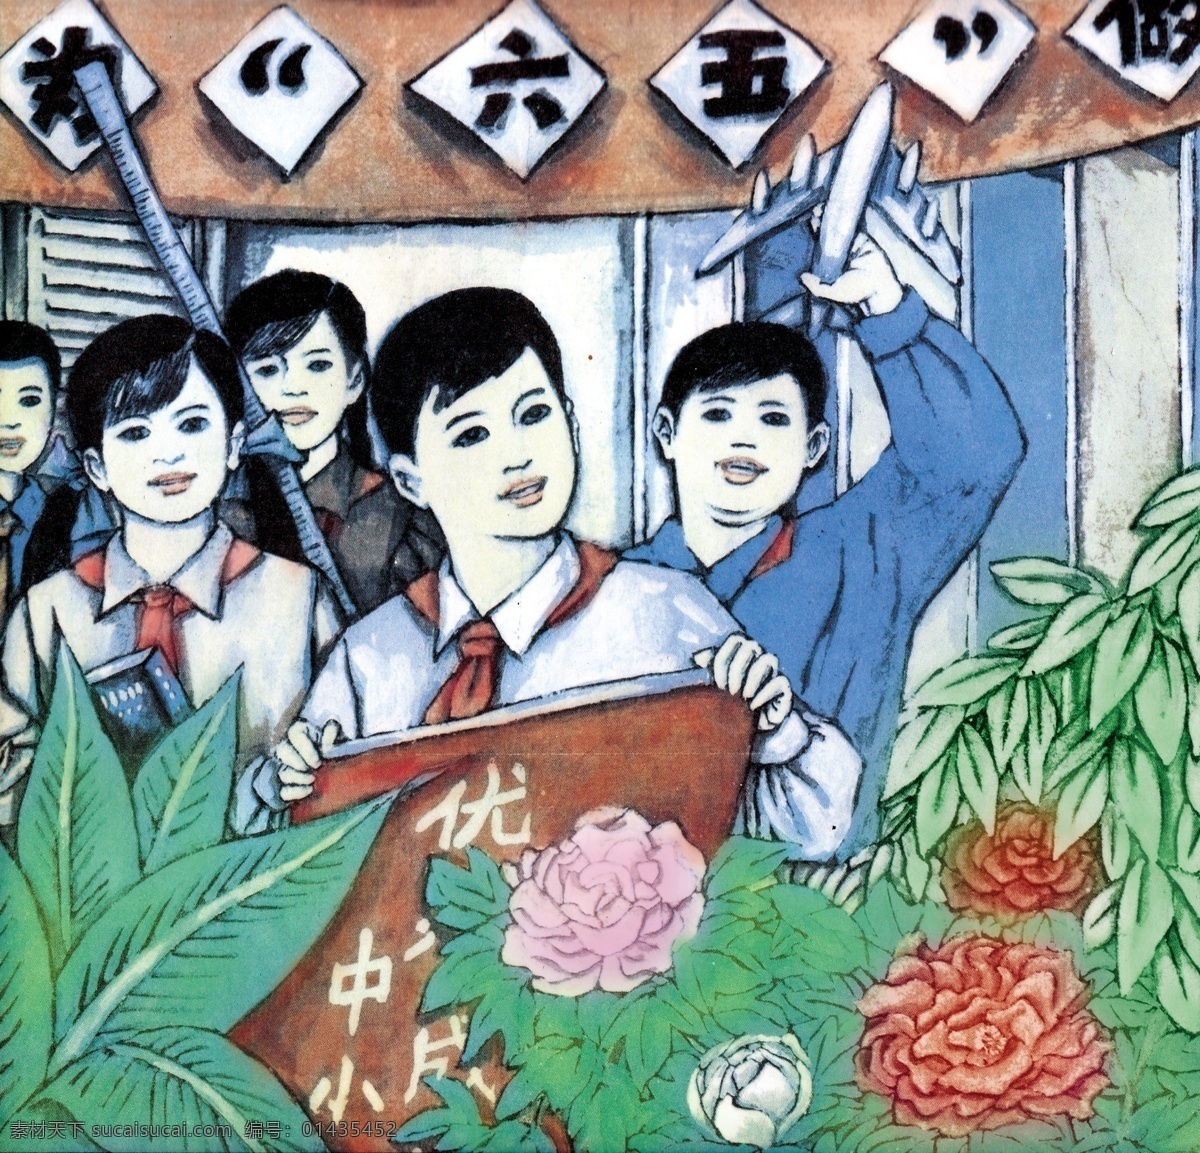 少先队队史 少年先锋队 劳动童子团 儿童团 老照片 历史图片 小学 历史 儿童革命组织 共产党创立 绘画书法 文化艺术